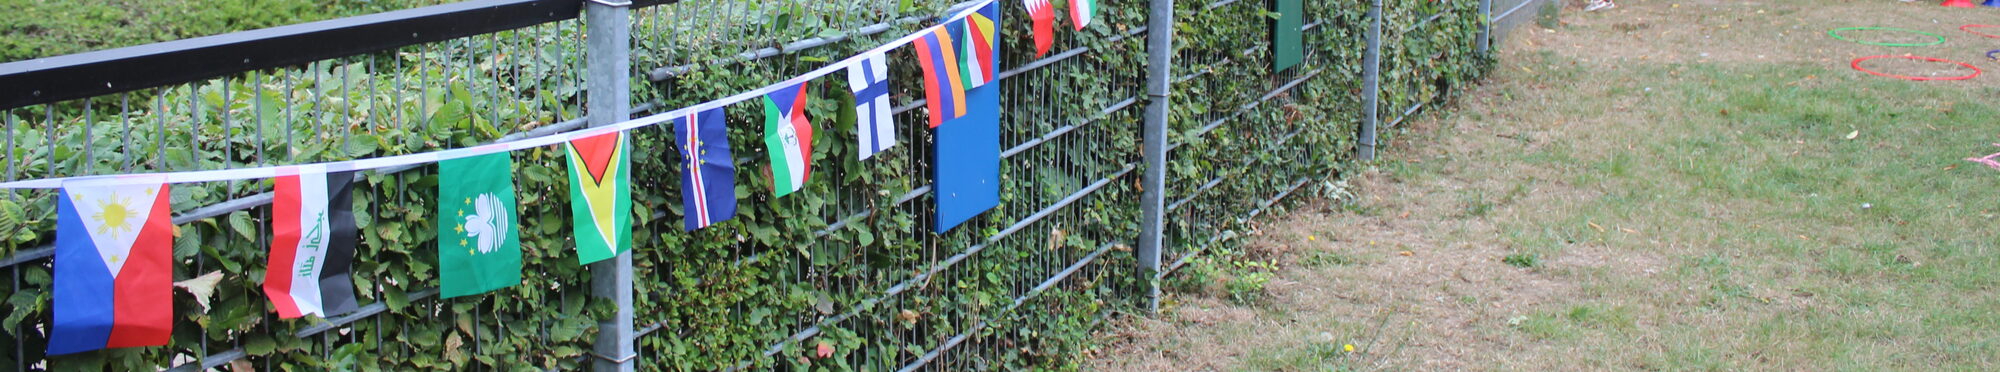 Flaggen am Zaun